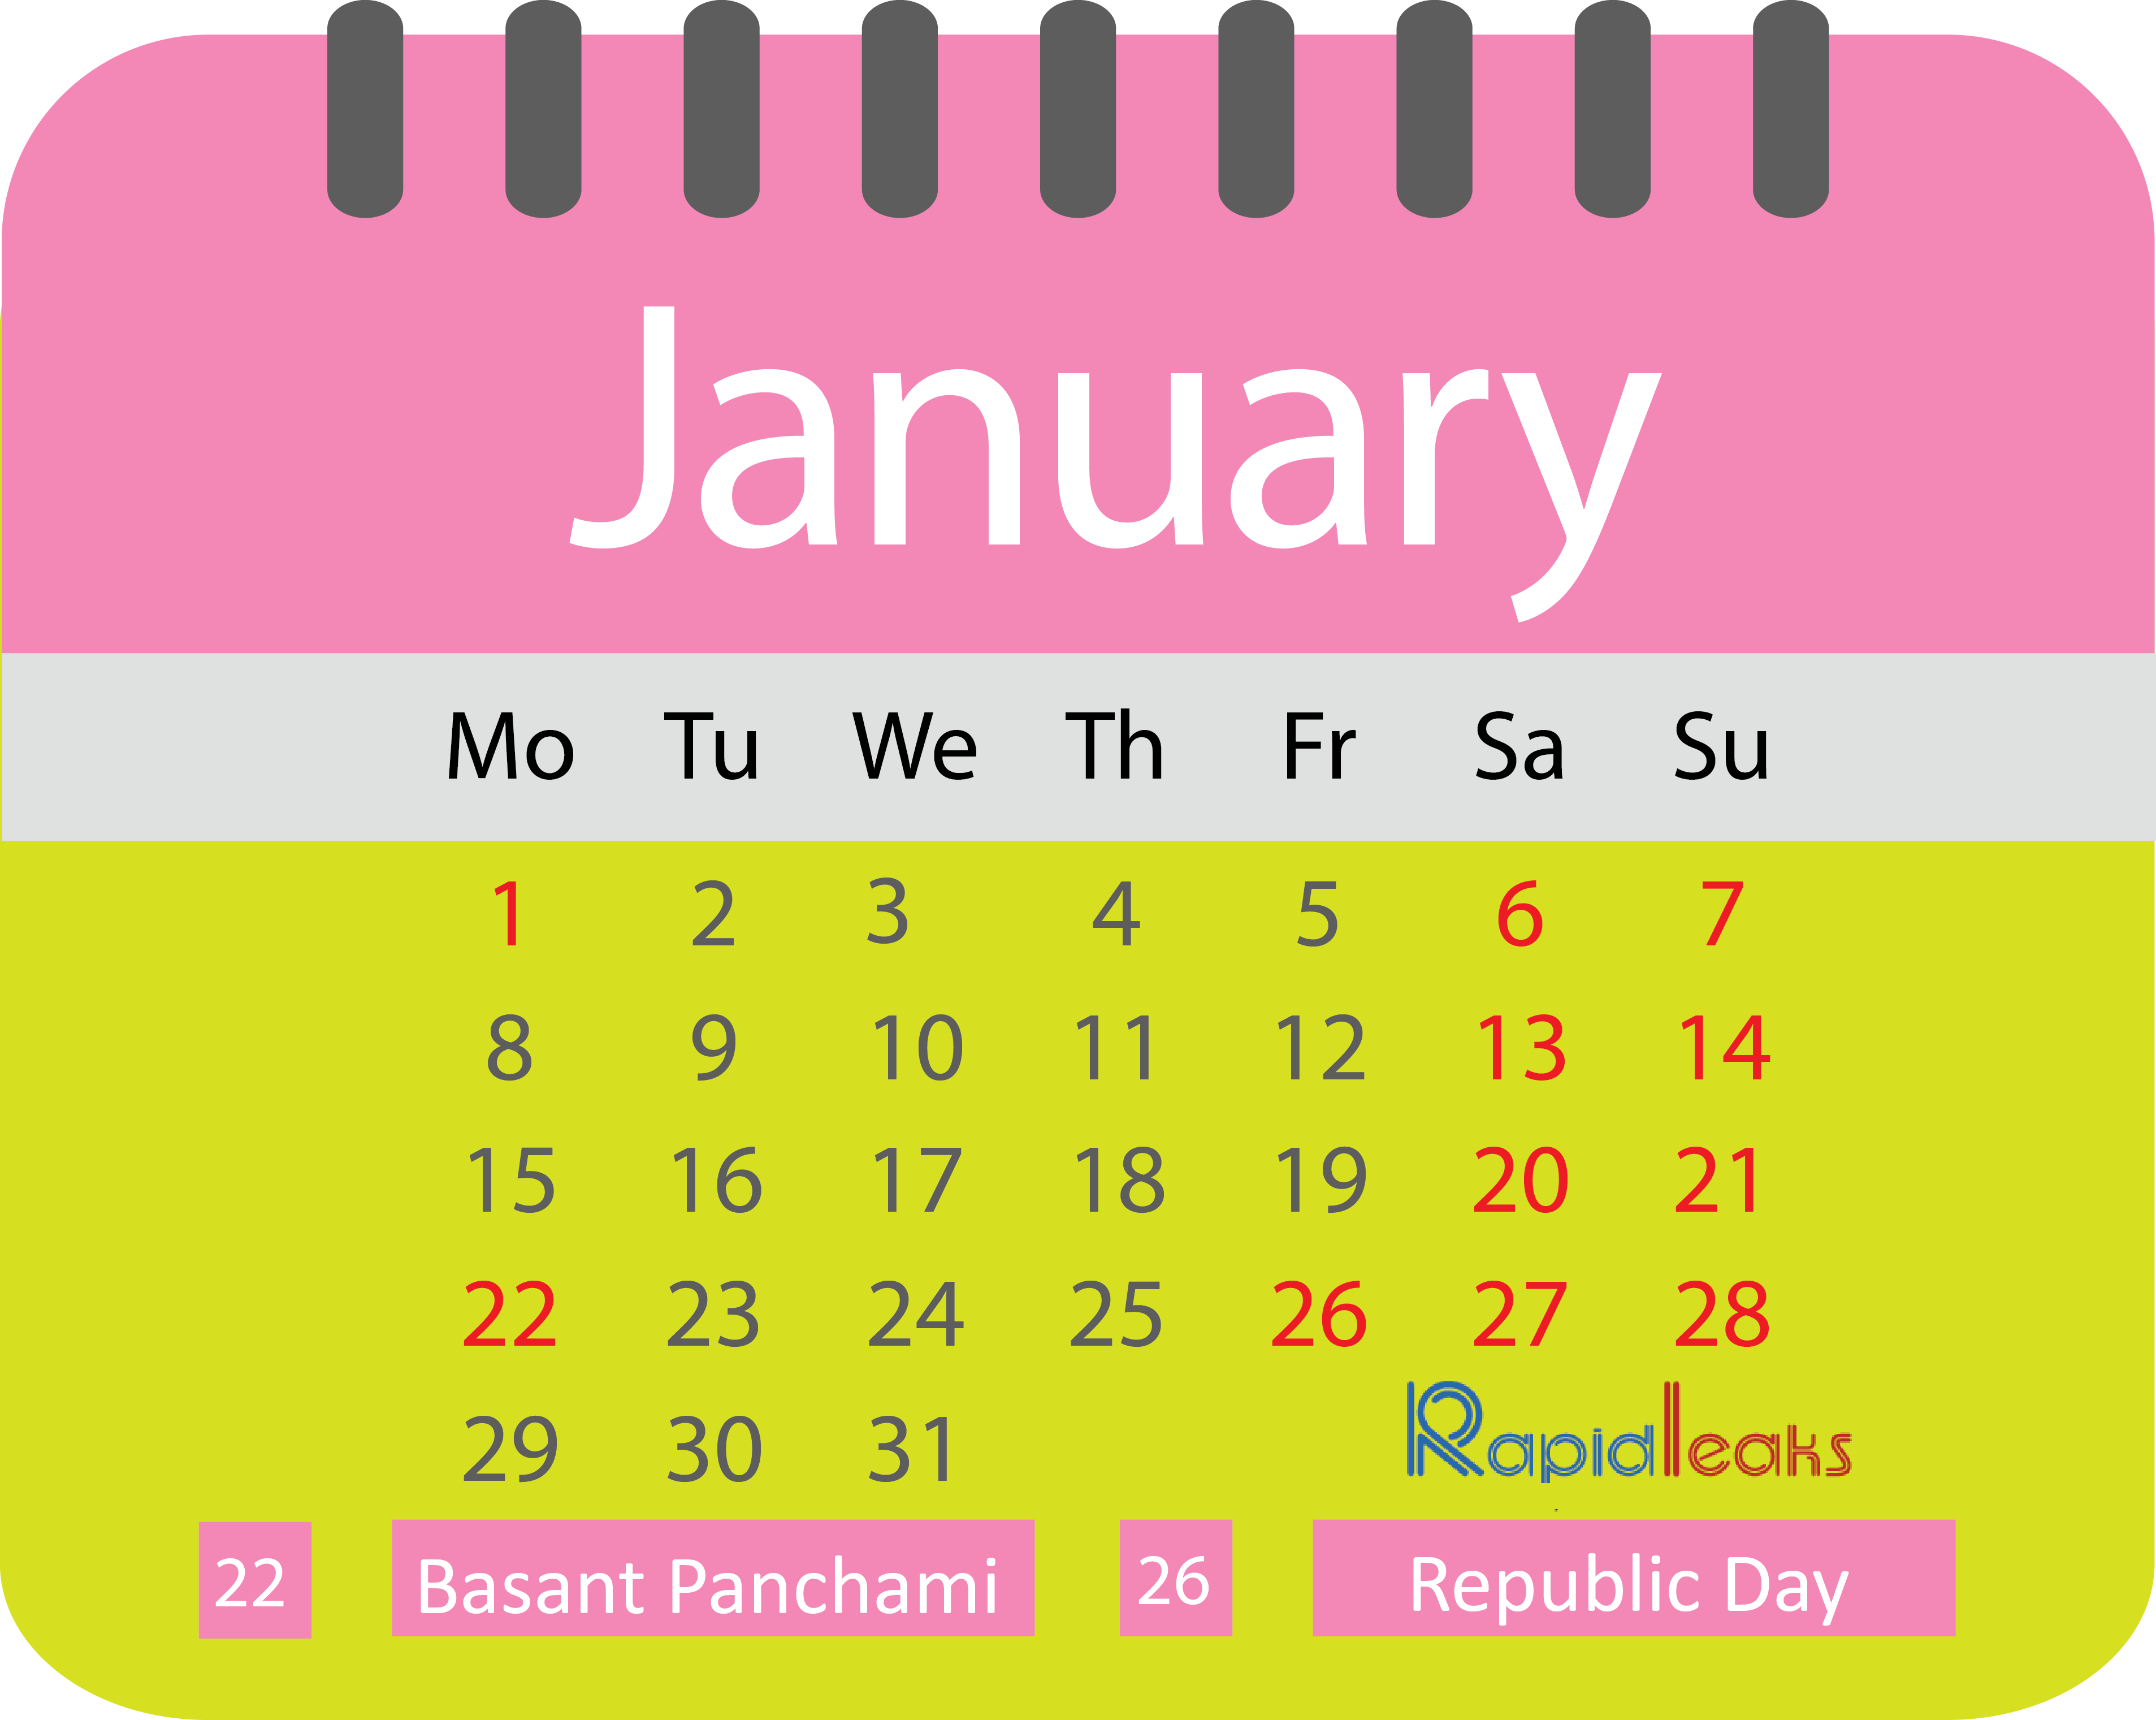 btc calendar holiday 2018 2019